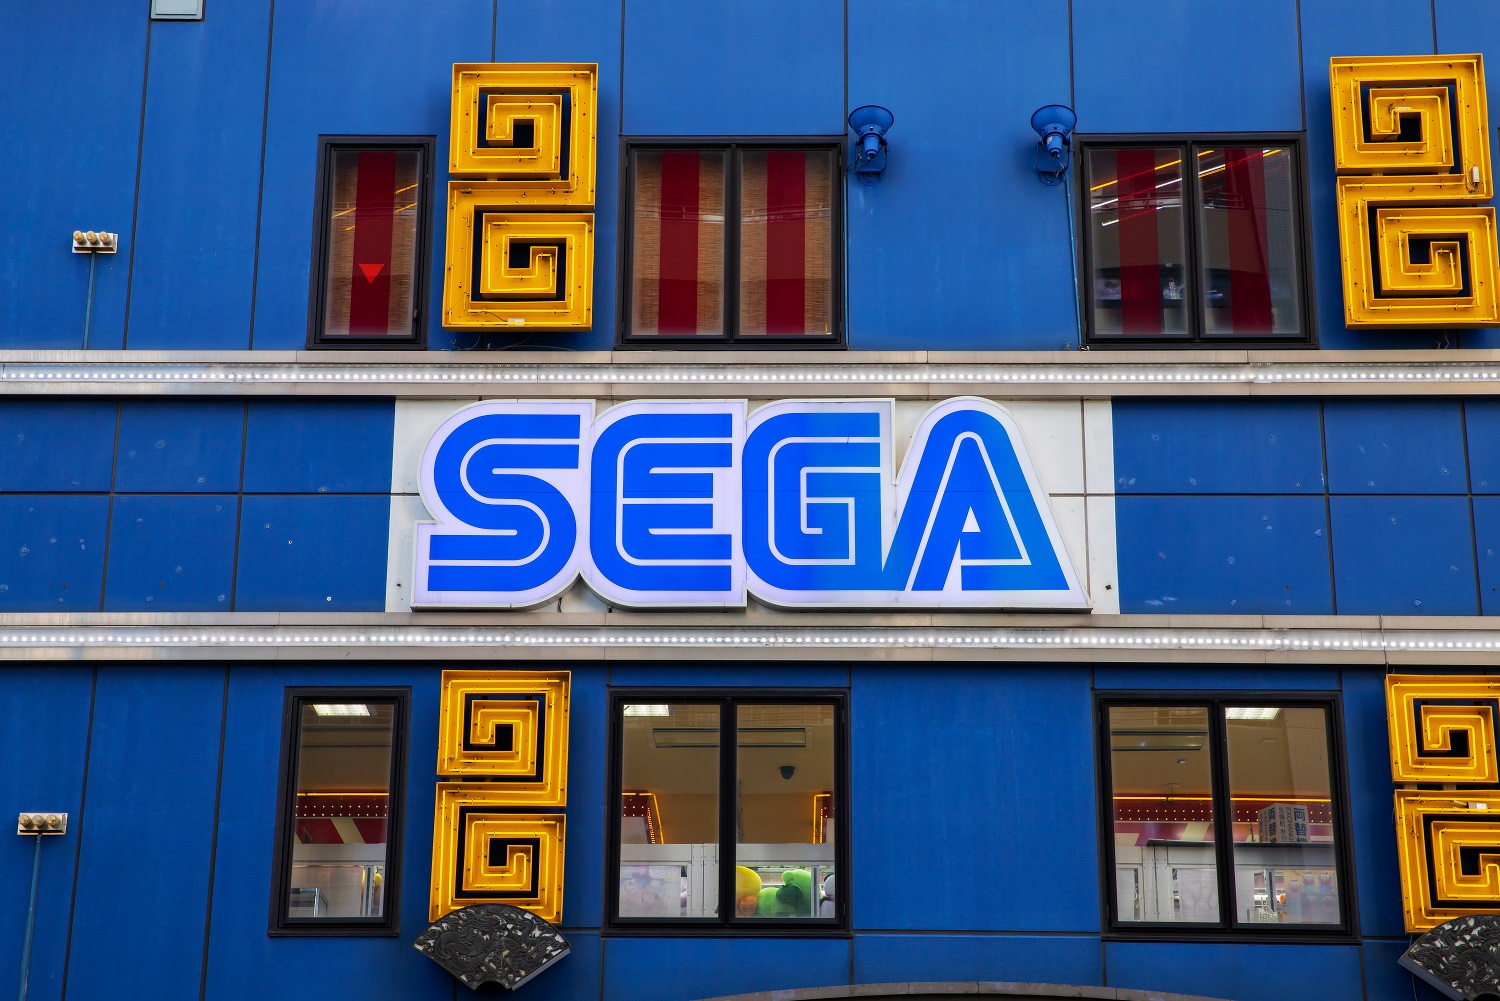 A building with the Sega logo on its facade.